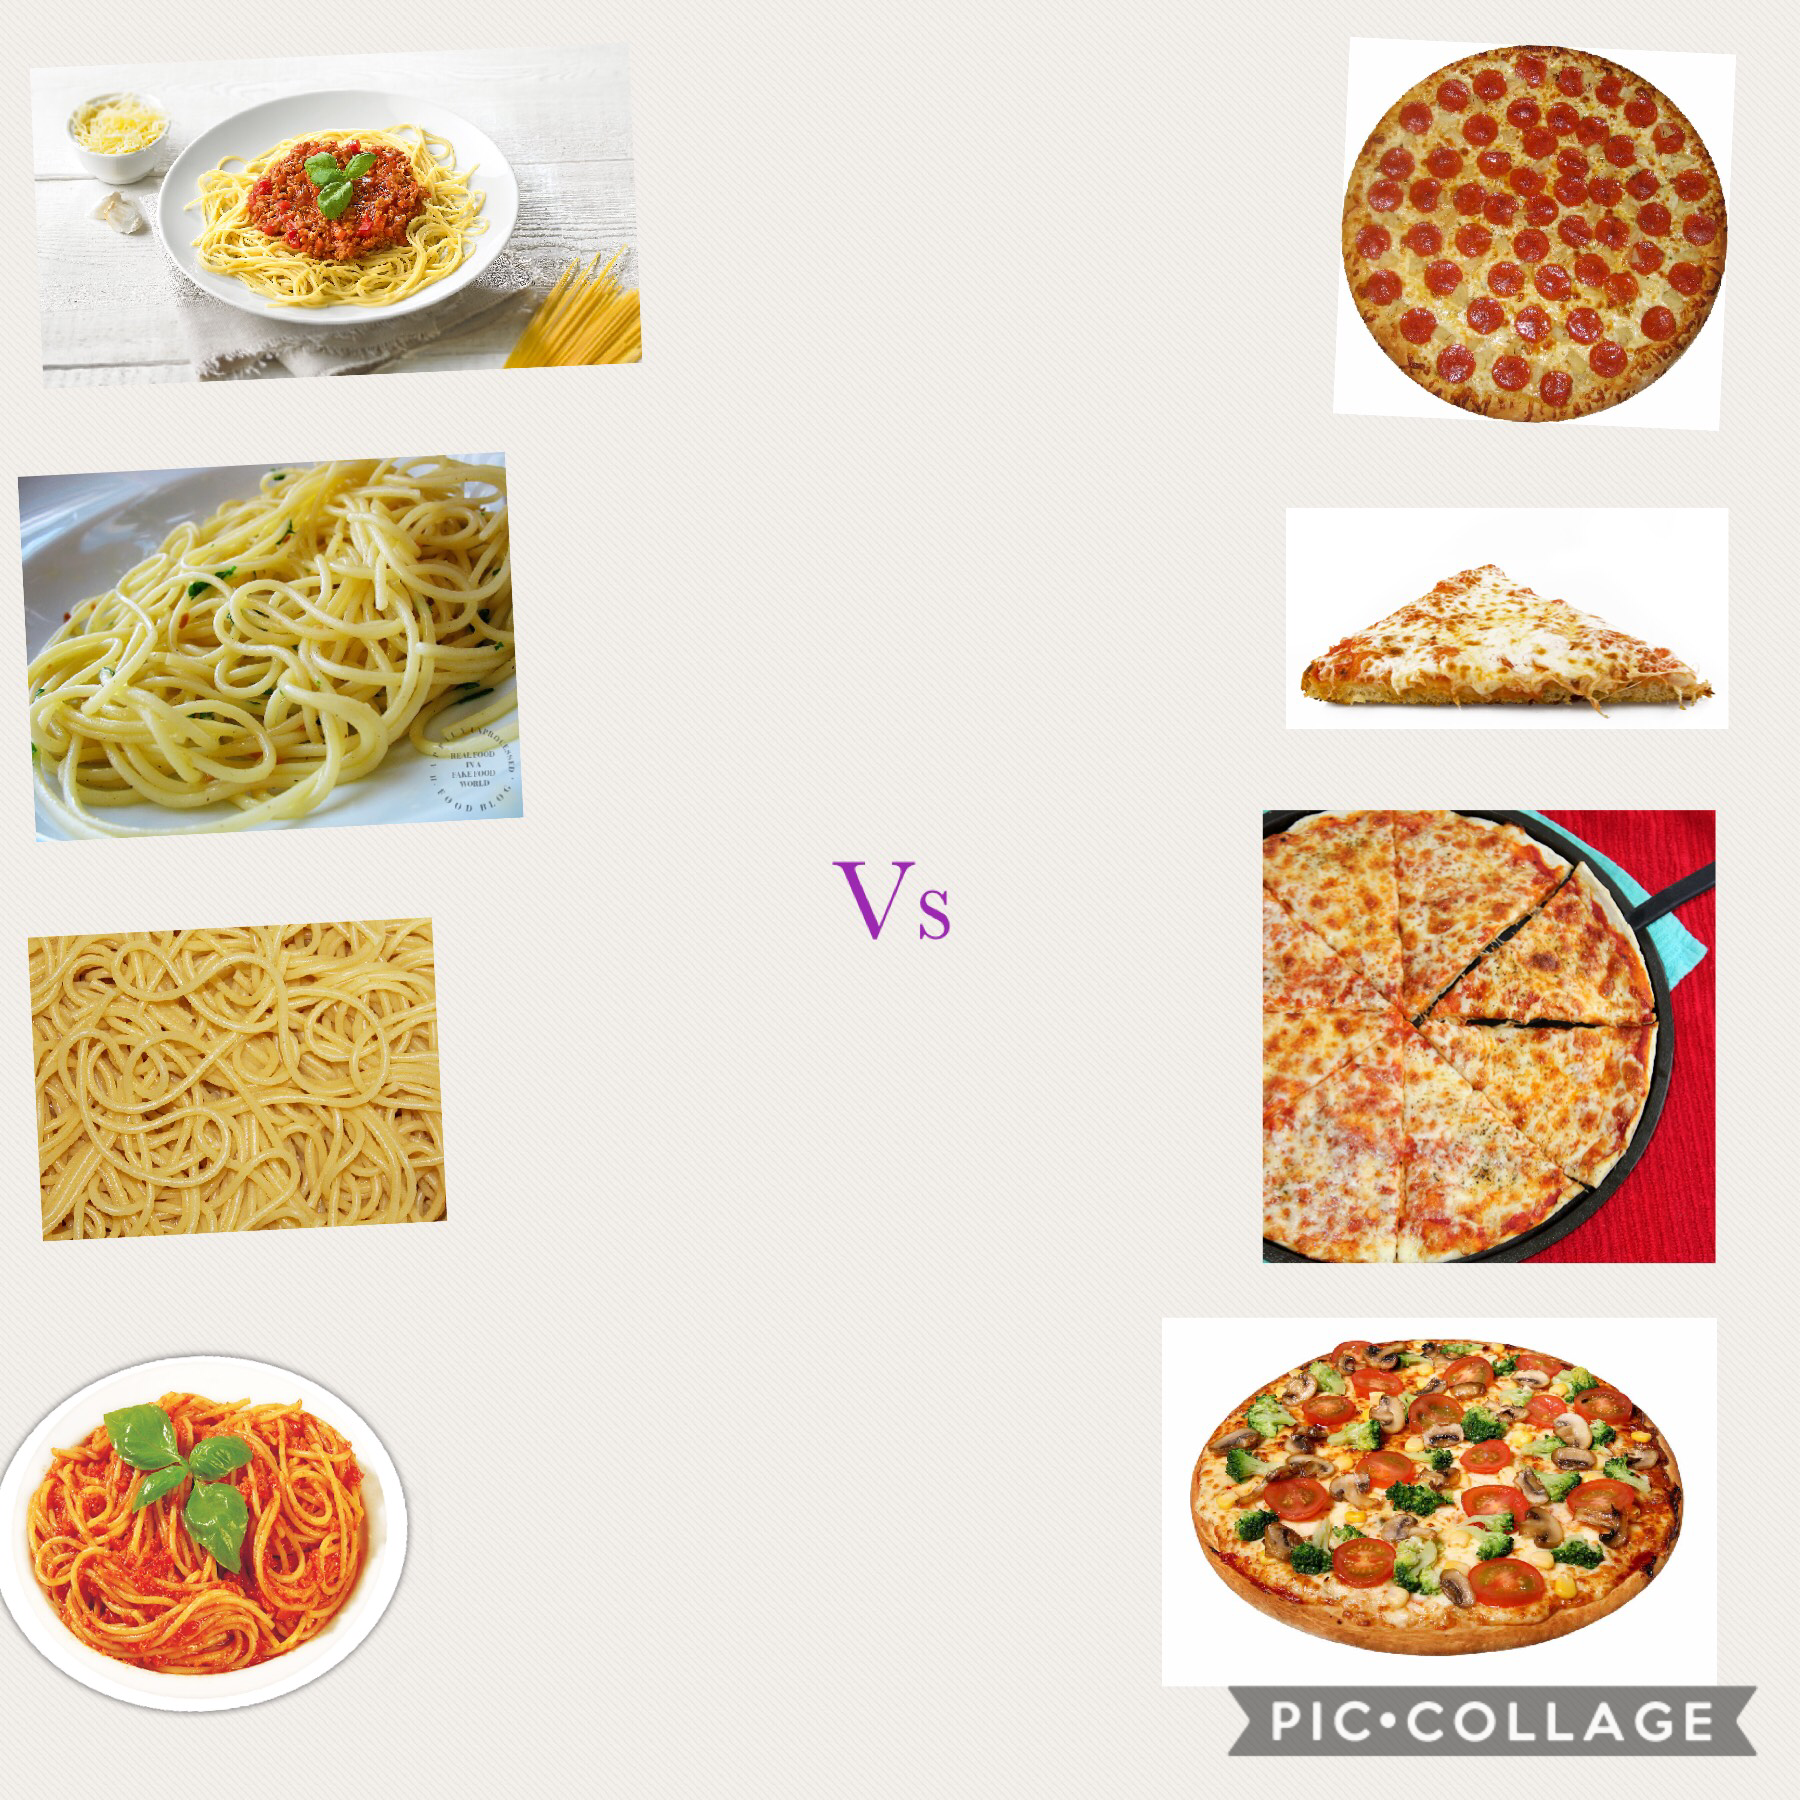 SPAGHETTI VS PIZZA